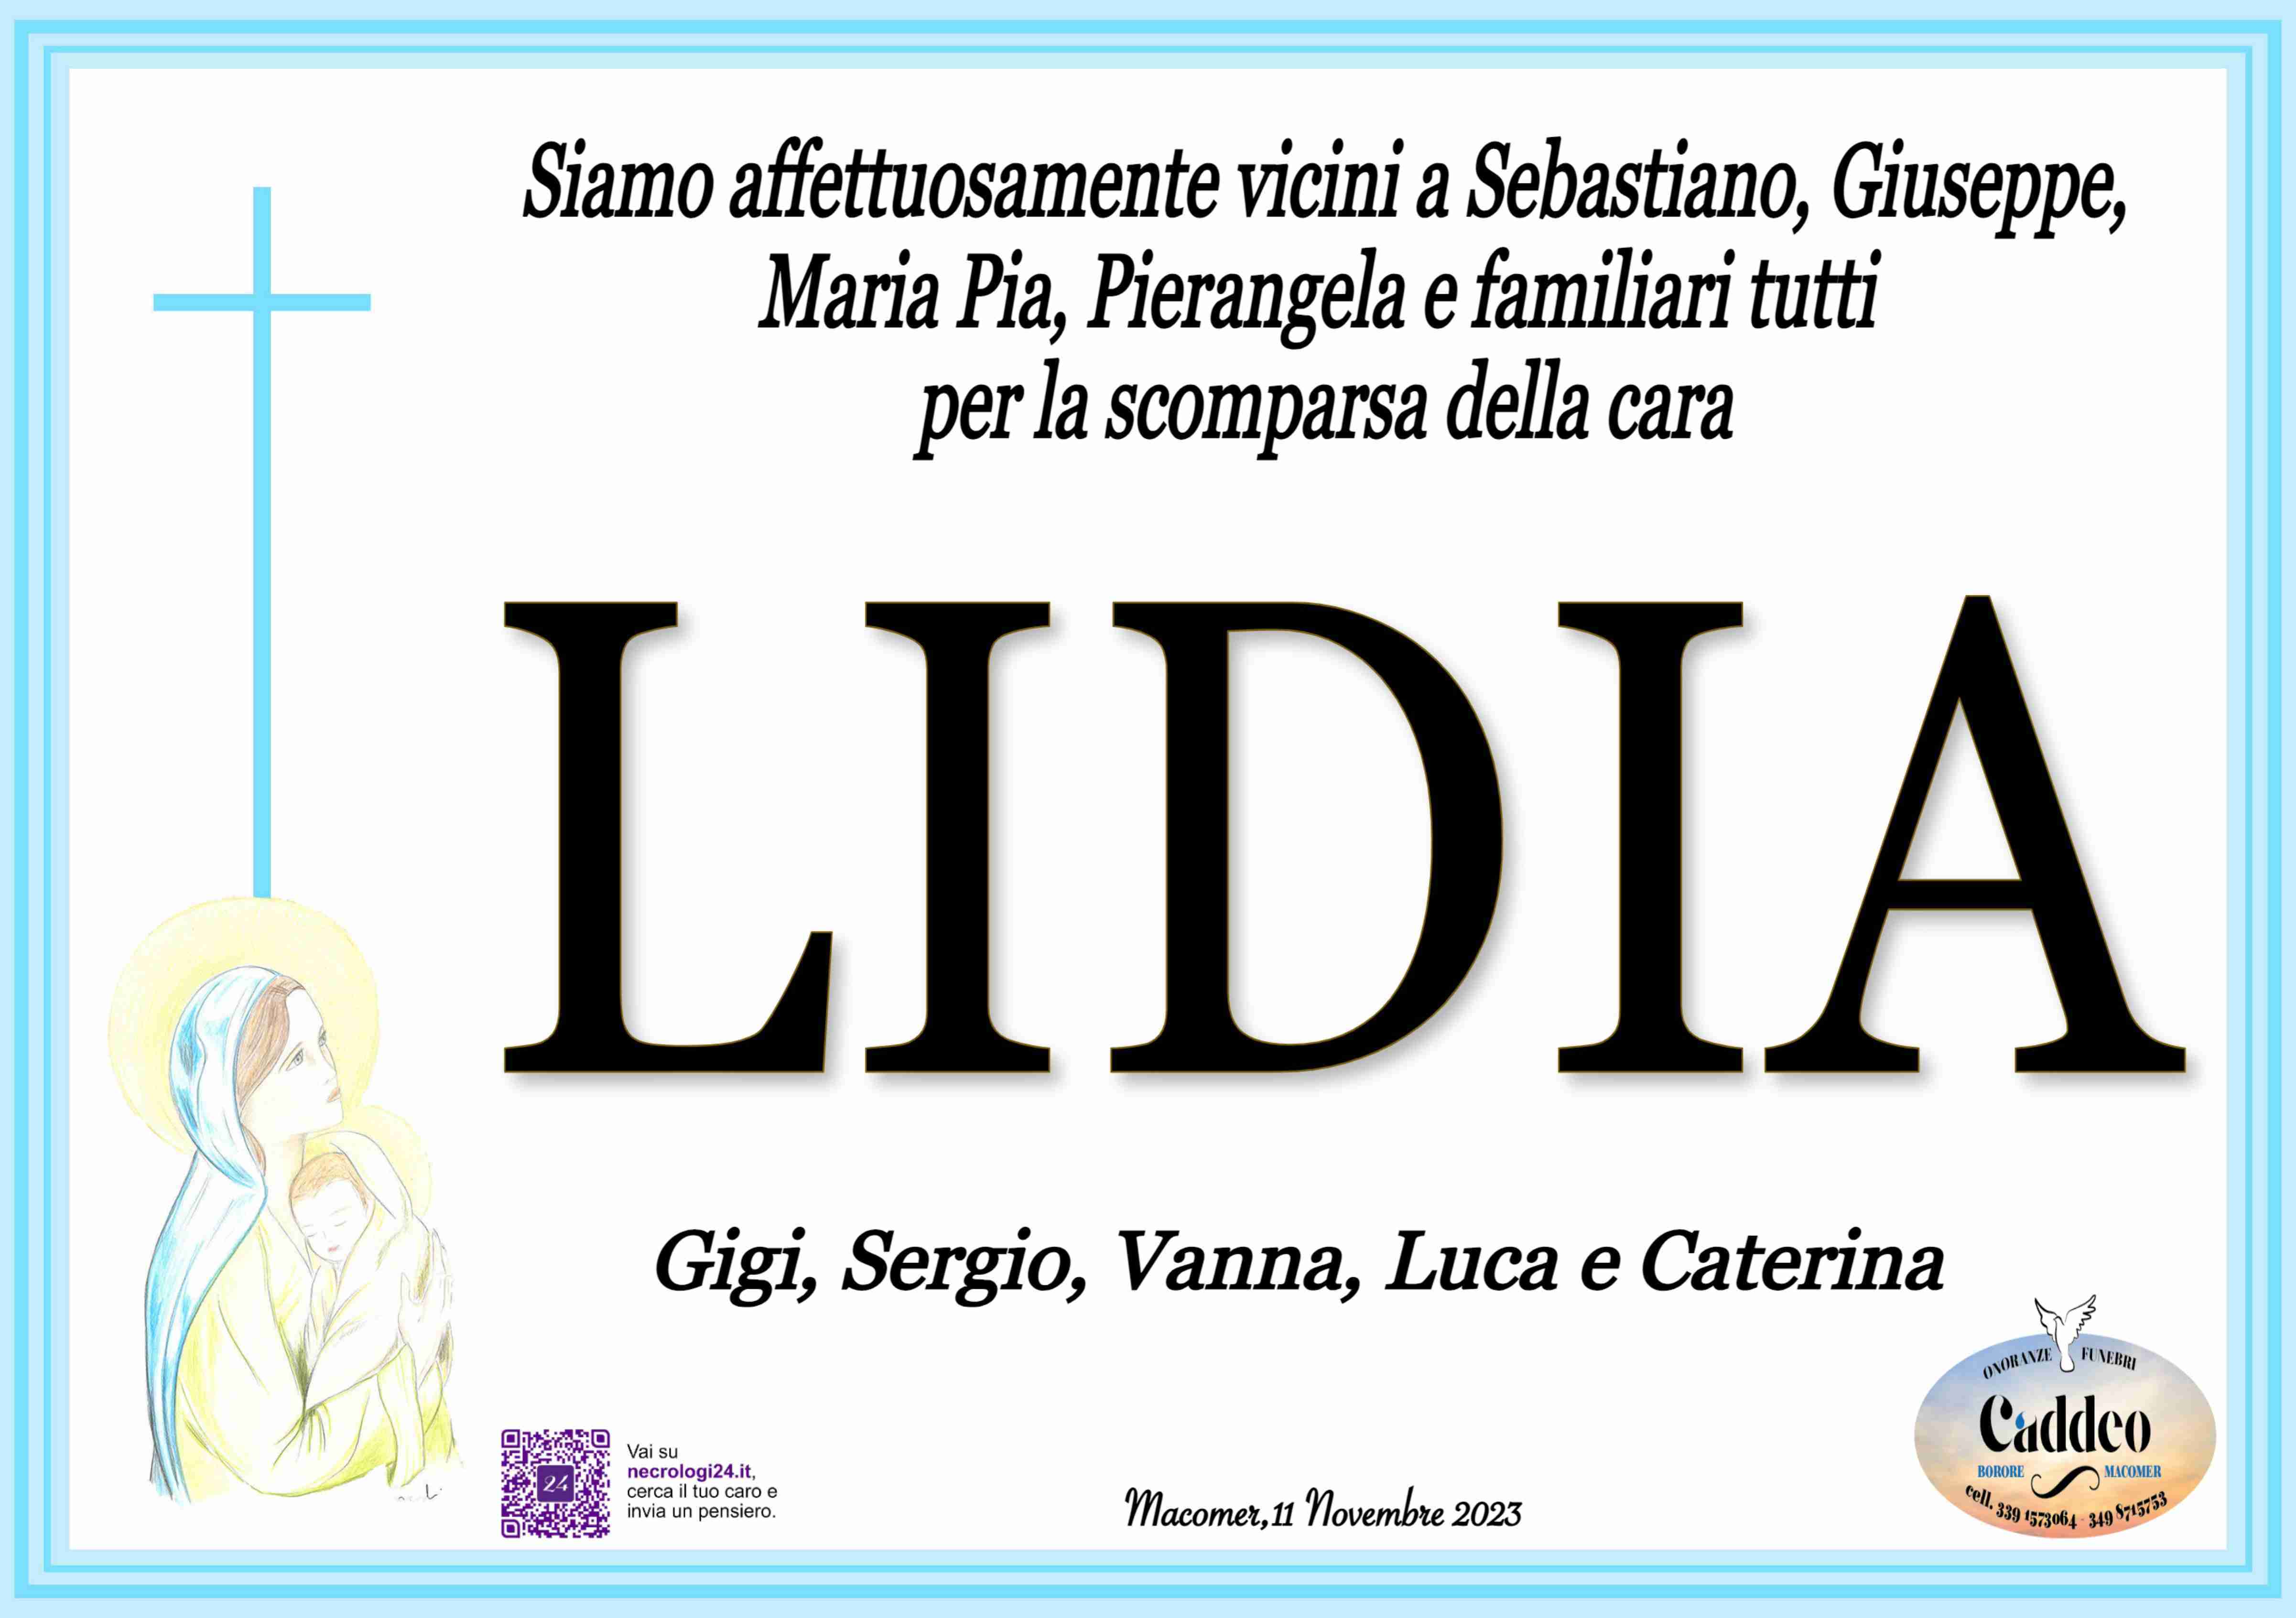 Lidia Faedda